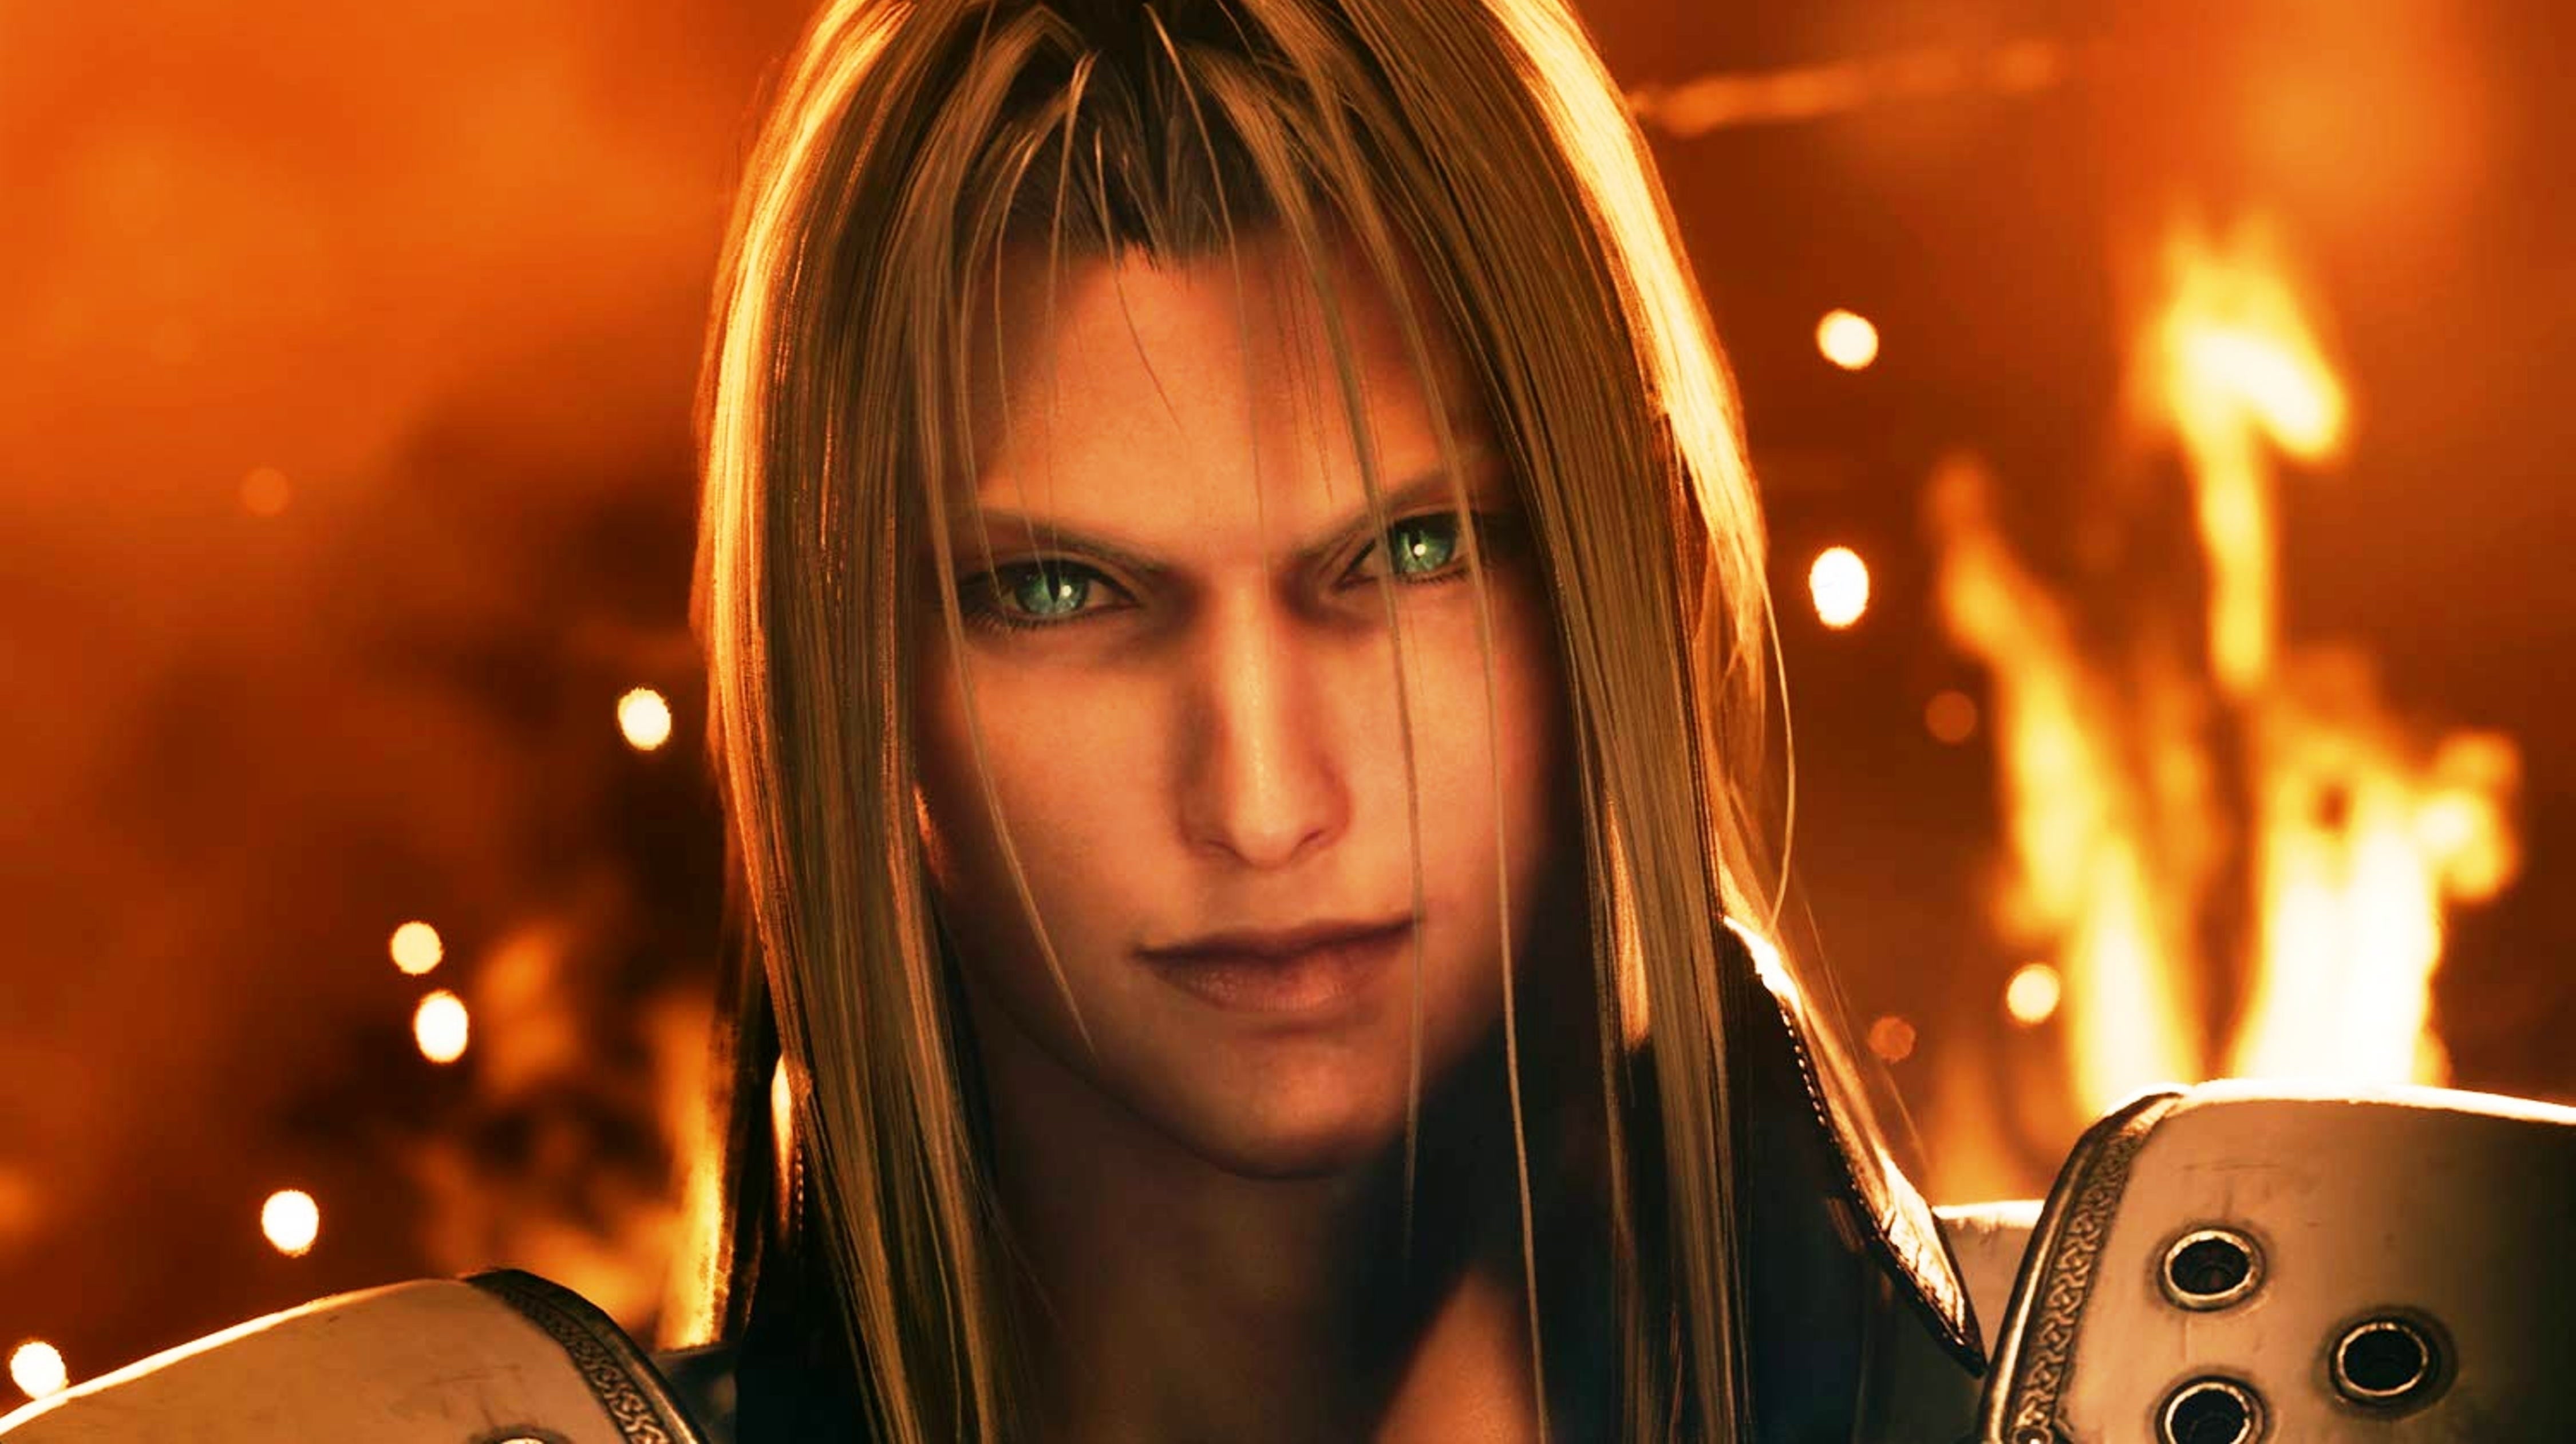 Bilder zu Final Fantasy 7 Remake - Test: Hallo. Schön euch endlich kennenzulernen